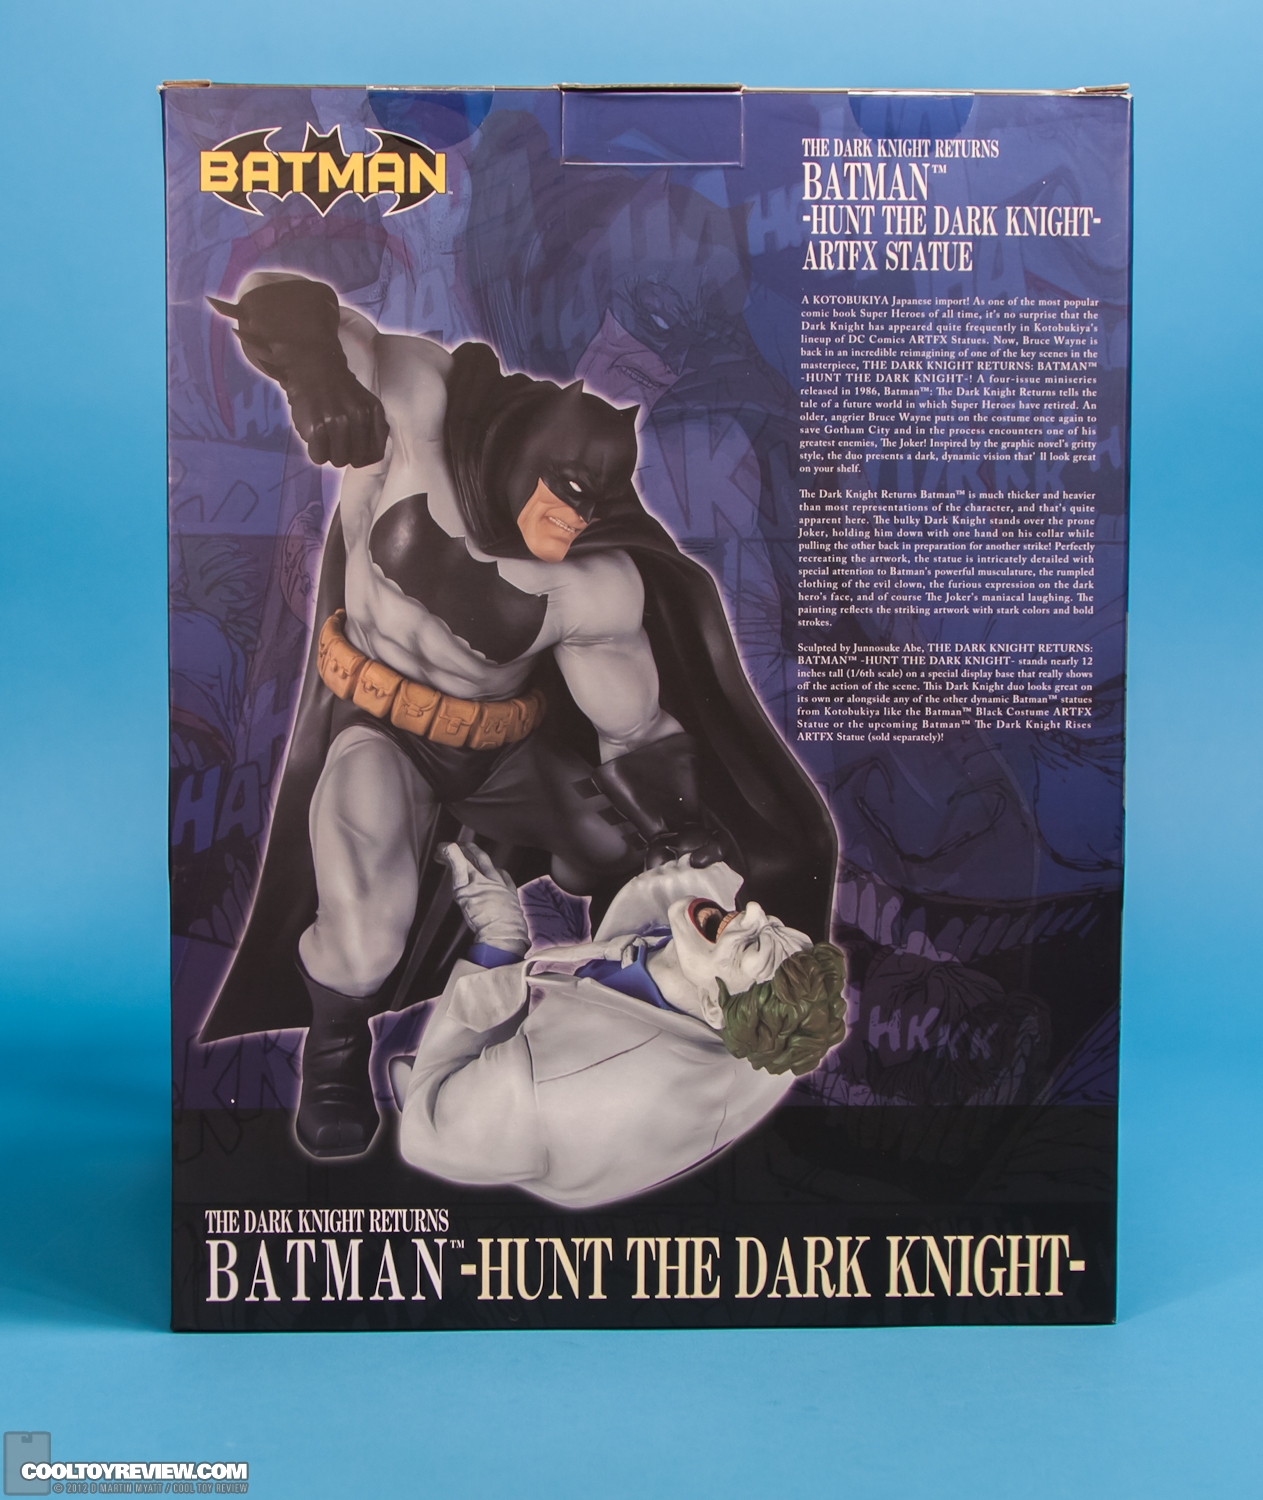 [Kotobukiya] The Dark Knight Returns: Batman-Hunt The Dark Knight - ARTFX Statue - Página 2 Hunt_The_Dark_Knight_Batman_ARTFX_Kotobukiya-20